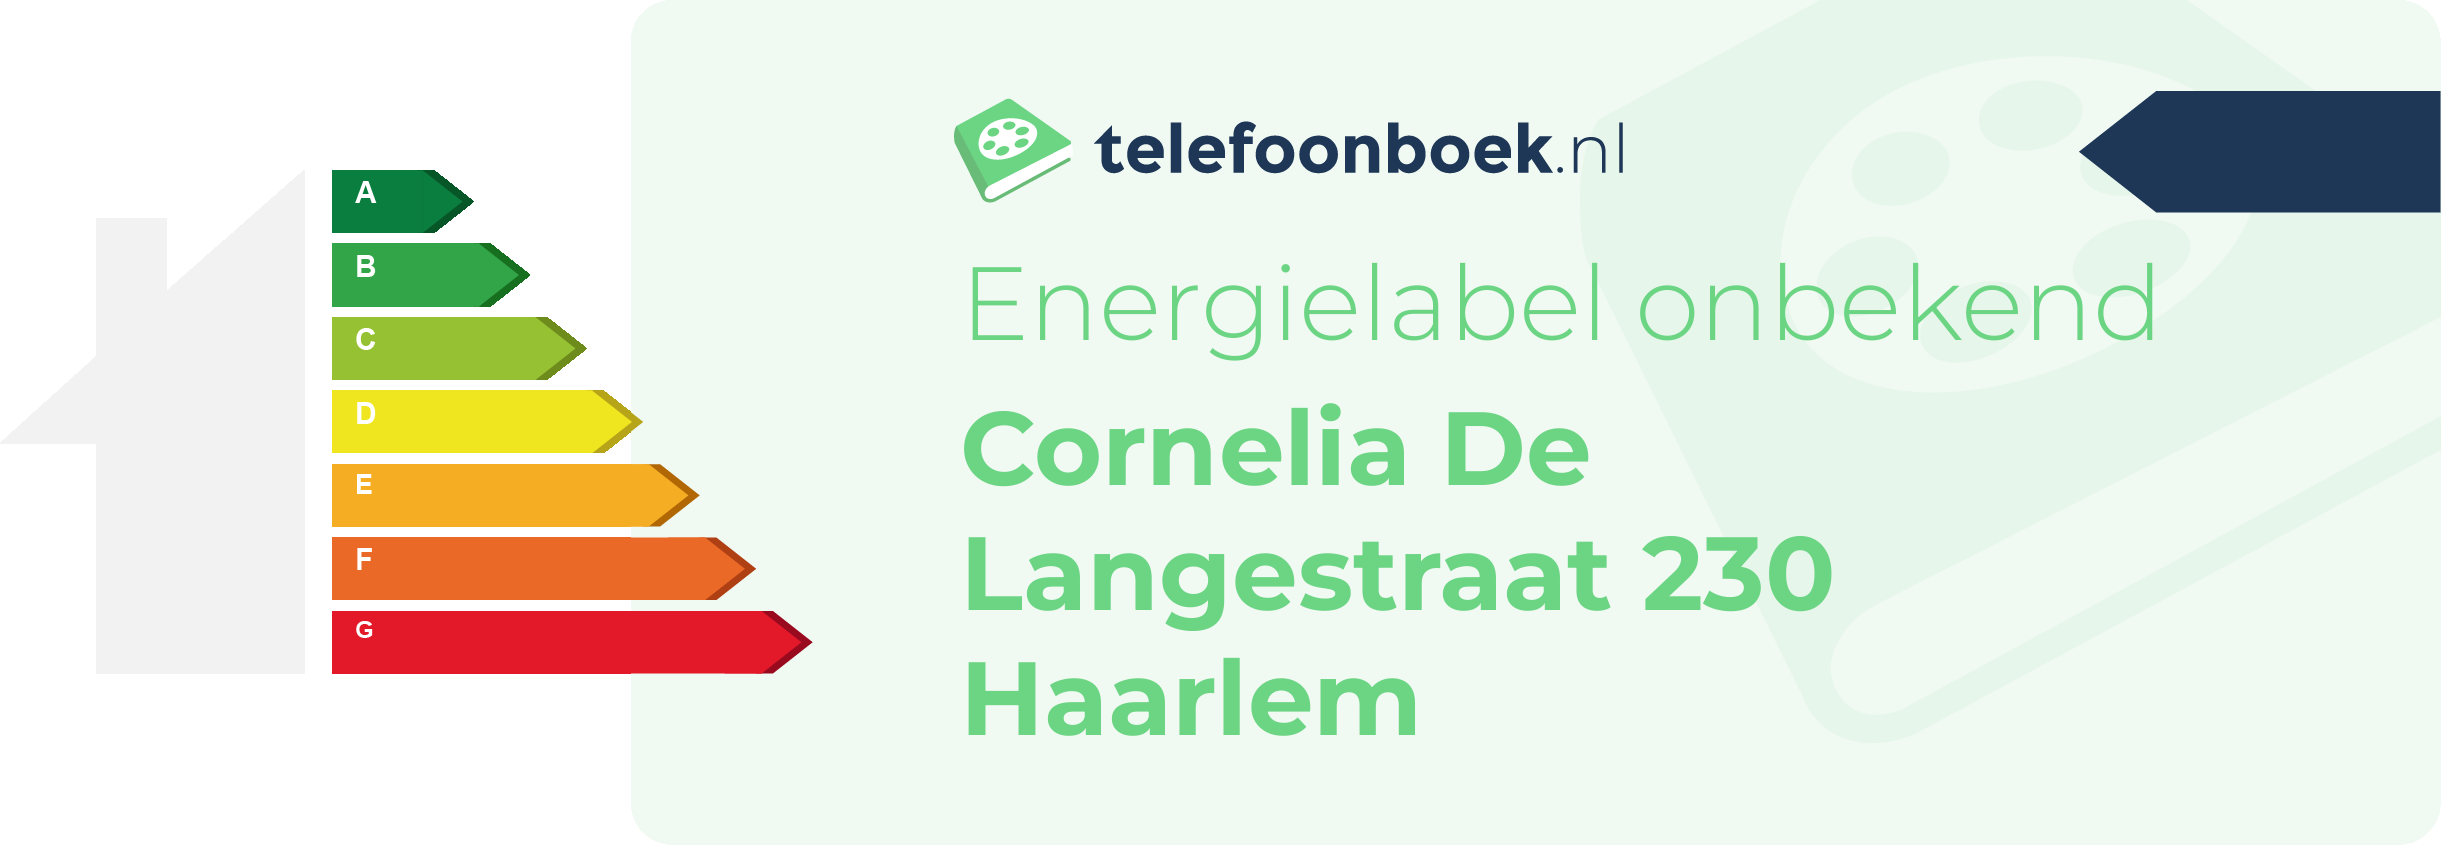 Energielabel Cornelia De Langestraat 230 Haarlem